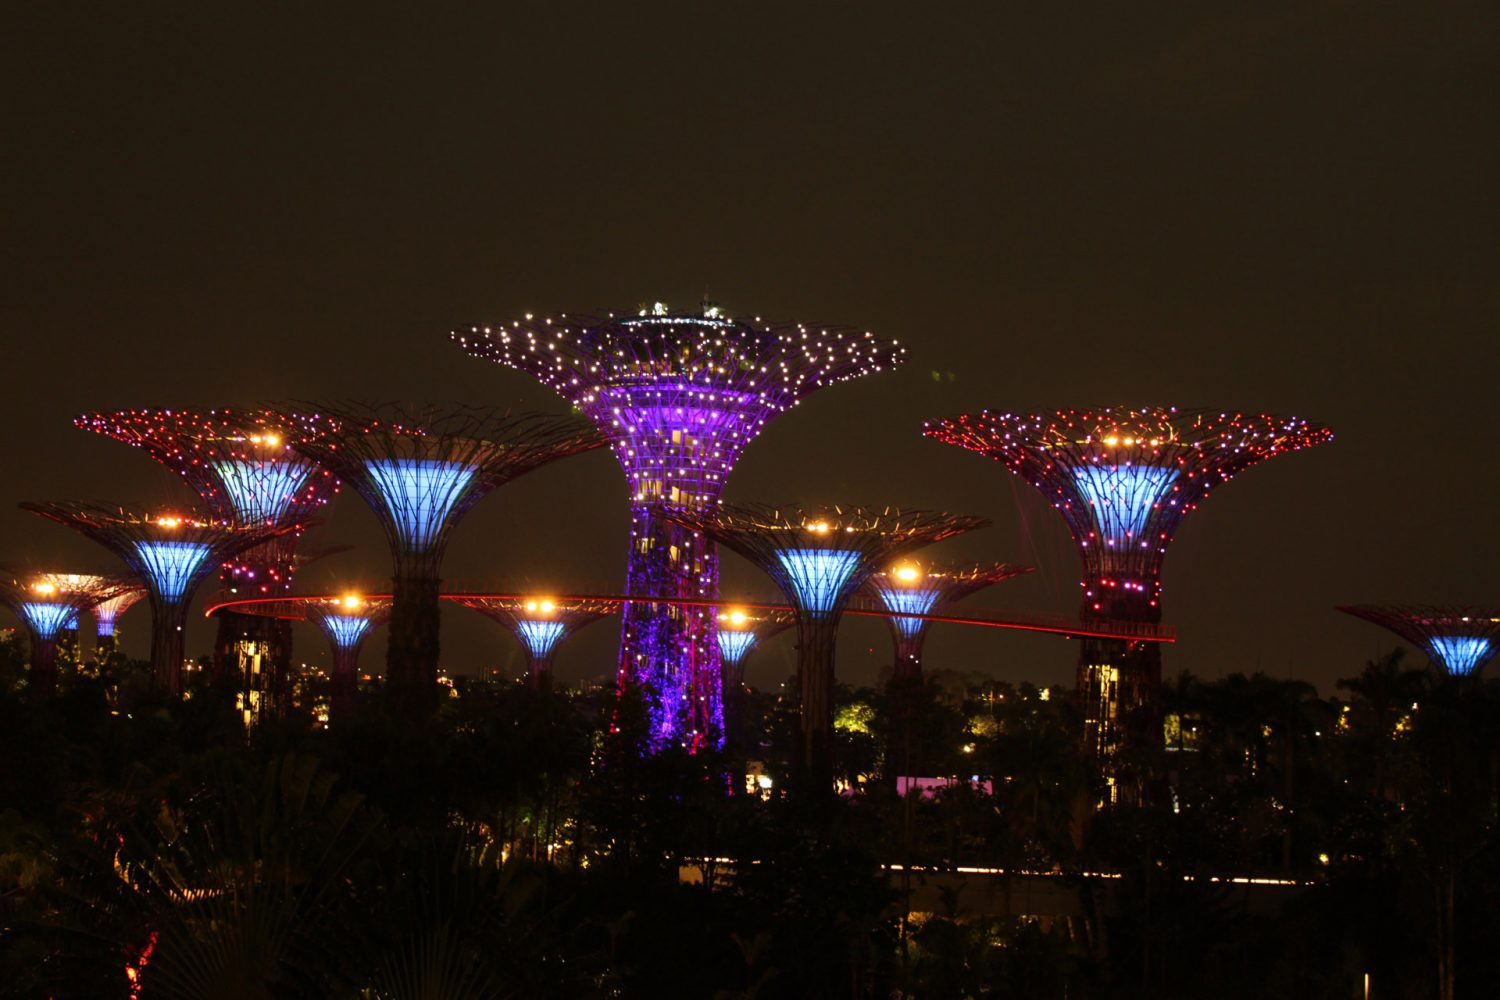 Skyline at night Singapore